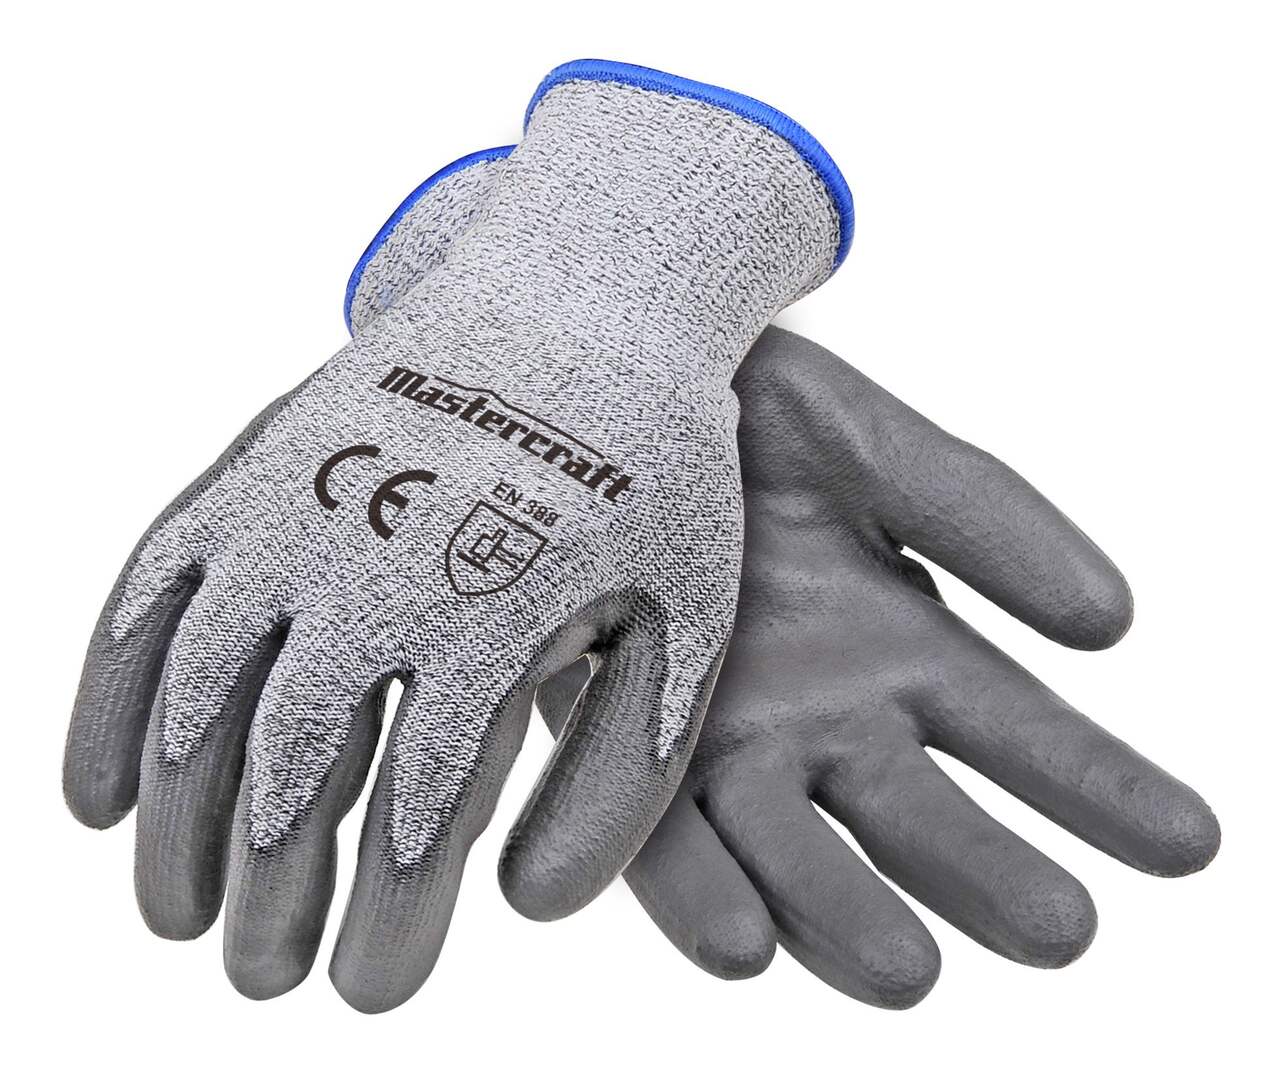 Mastercraft PU Dipped Level 5 Cut Resistant Elastic Cuff Glove